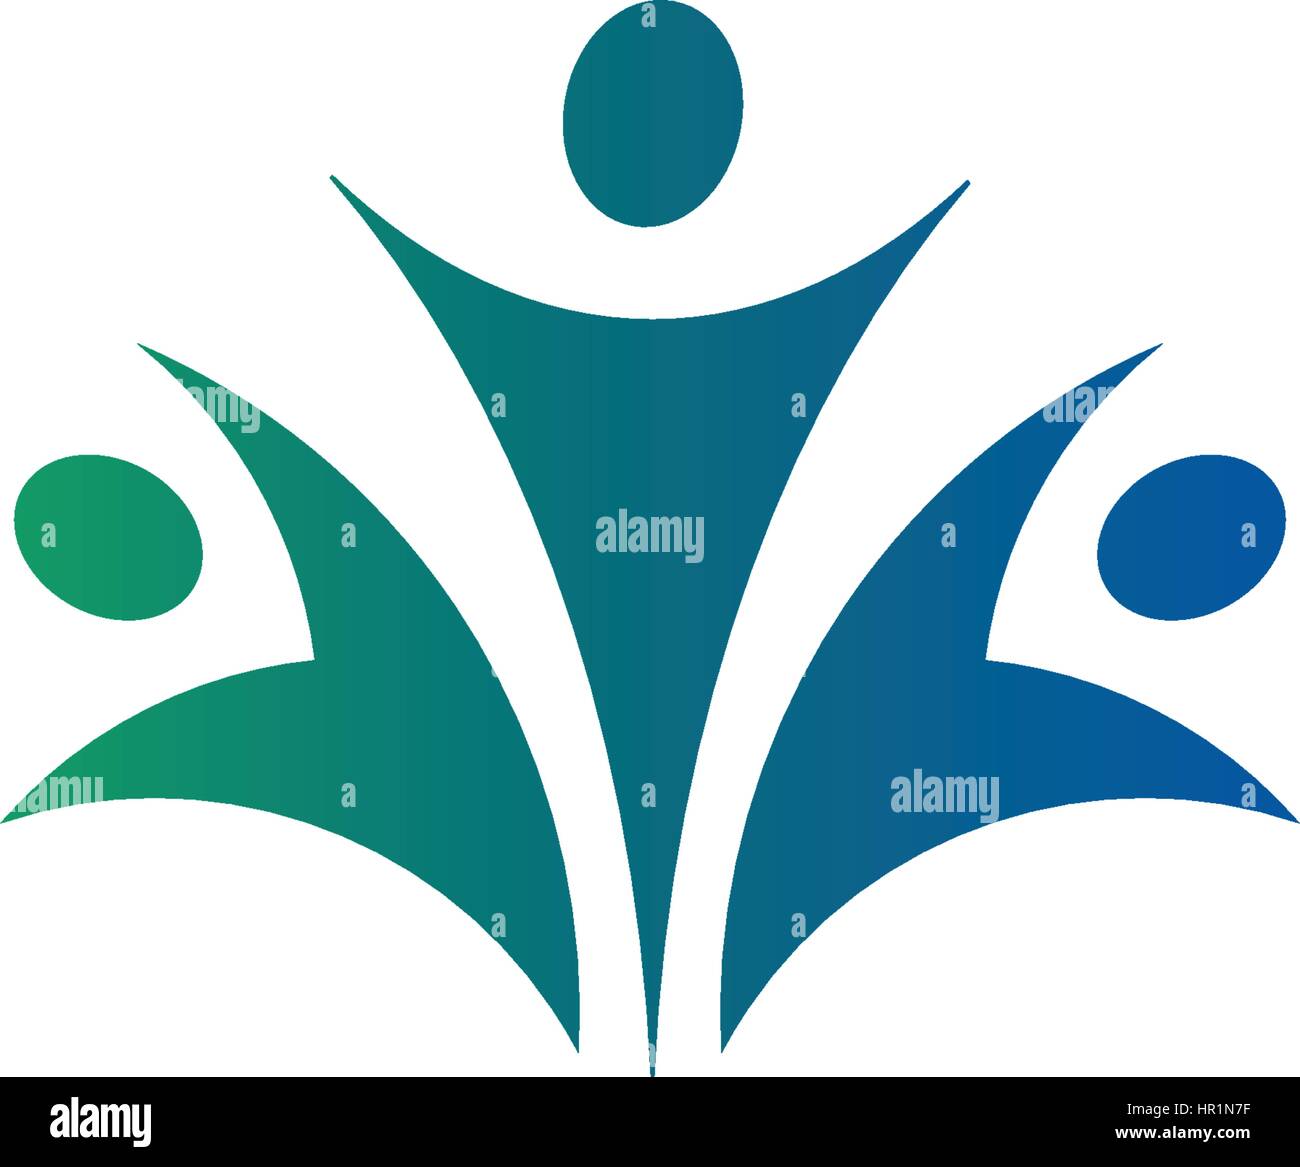 Résumé isolés du groupe de couleur vert et bleu de trois personnes logo sur fond blanc vector illustration. Illustration de Vecteur